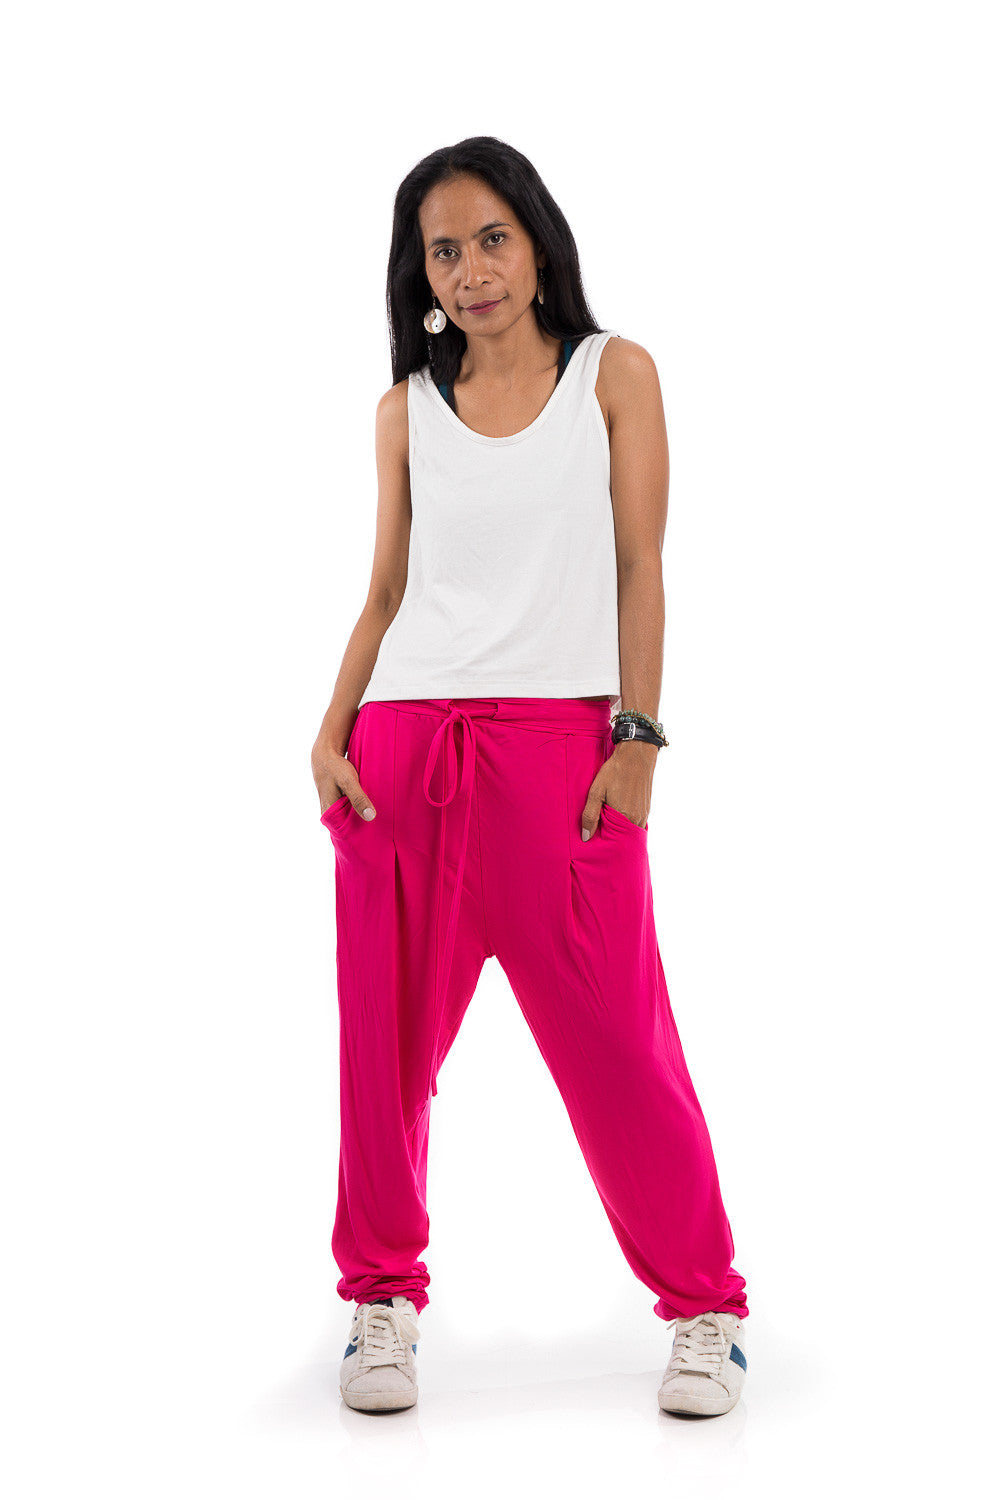 Womens Tapered/Carrot Pants Elegant Zipper Fly High Waist Hot Pink M -  Walmart.com